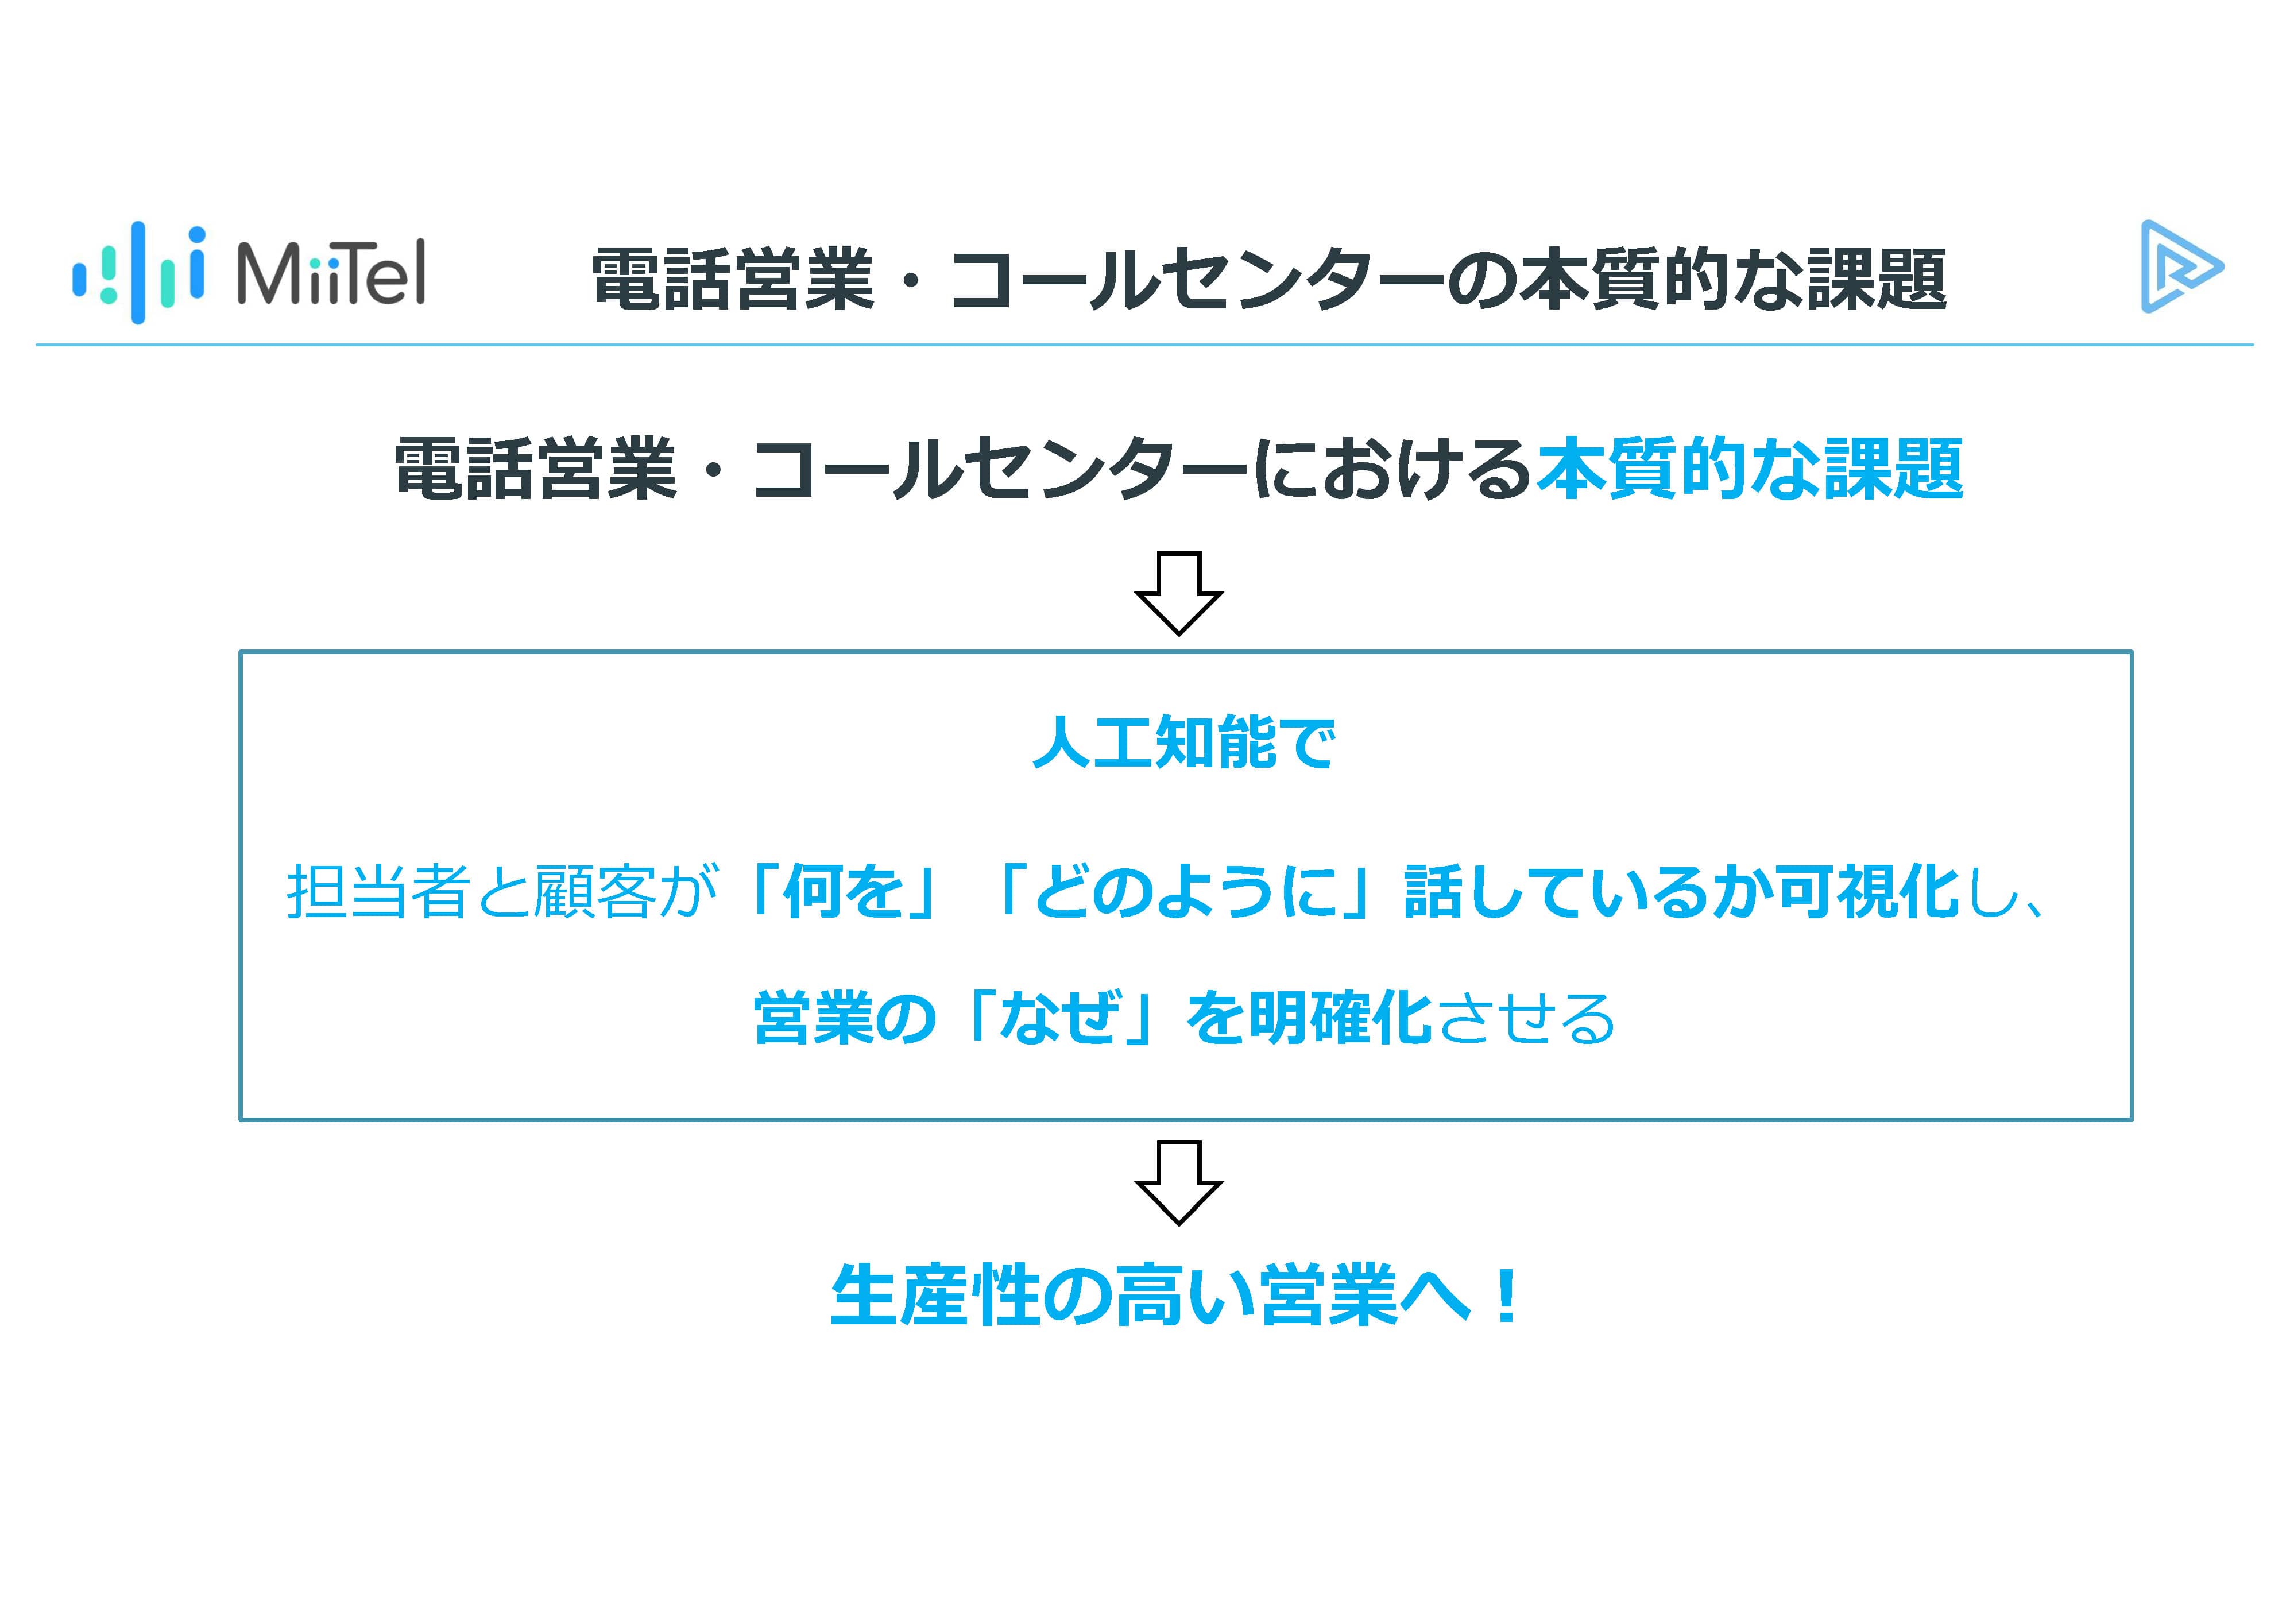 MiiTelは、AI電話で会話を可視化して、日本の生産性向上にコミットする 